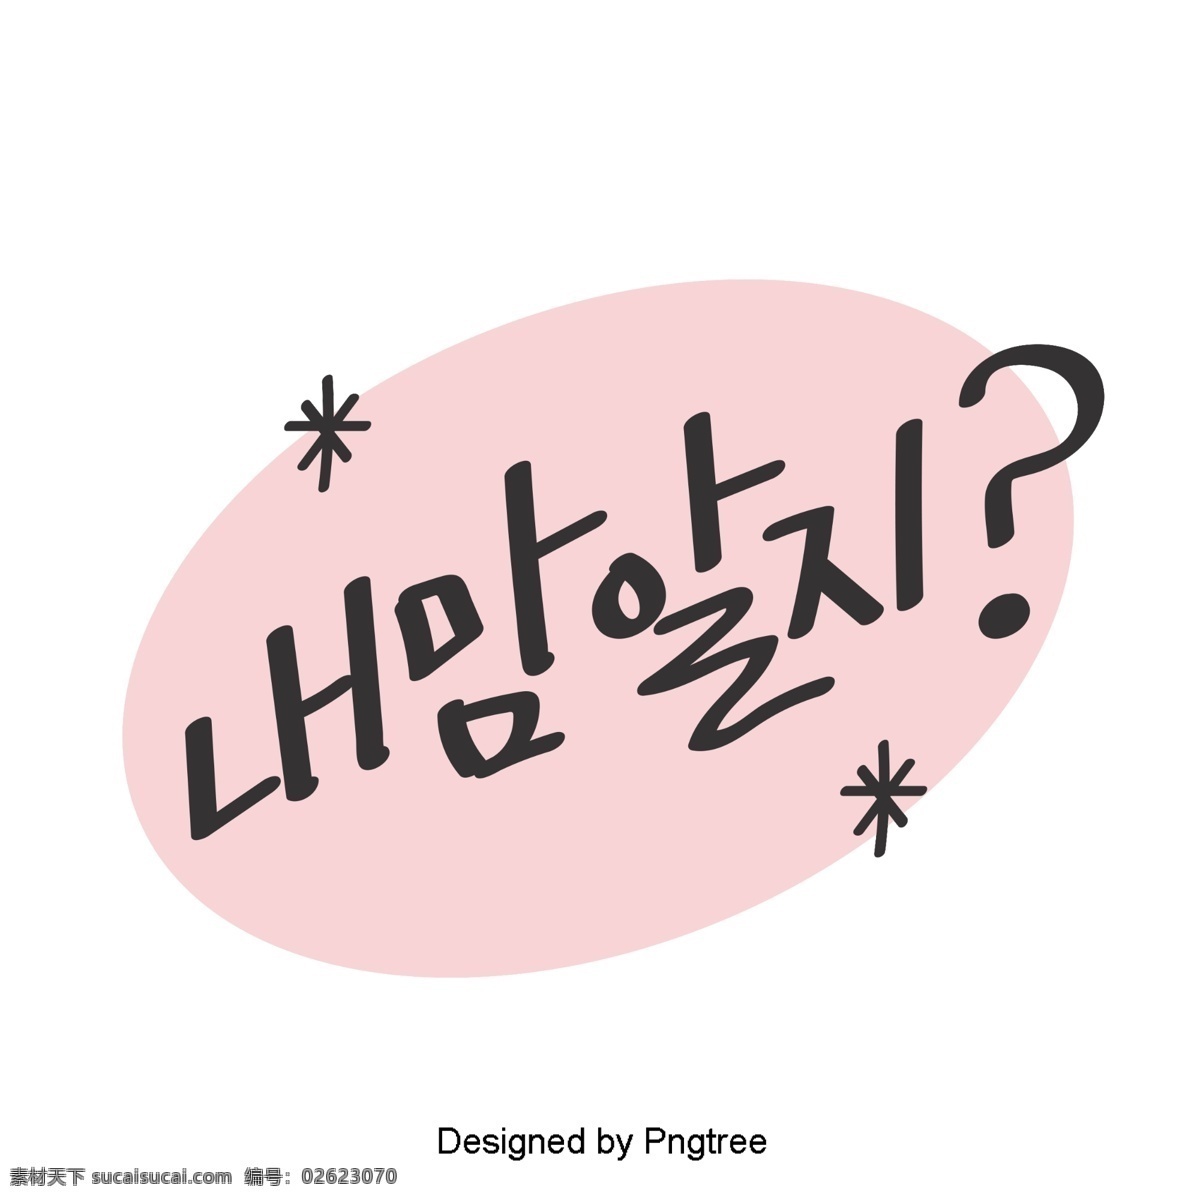 心中 知道 韩国 可爱 的卡 通 风格 元素 字体 移动 疑问 卡通 粉红色 移动支付